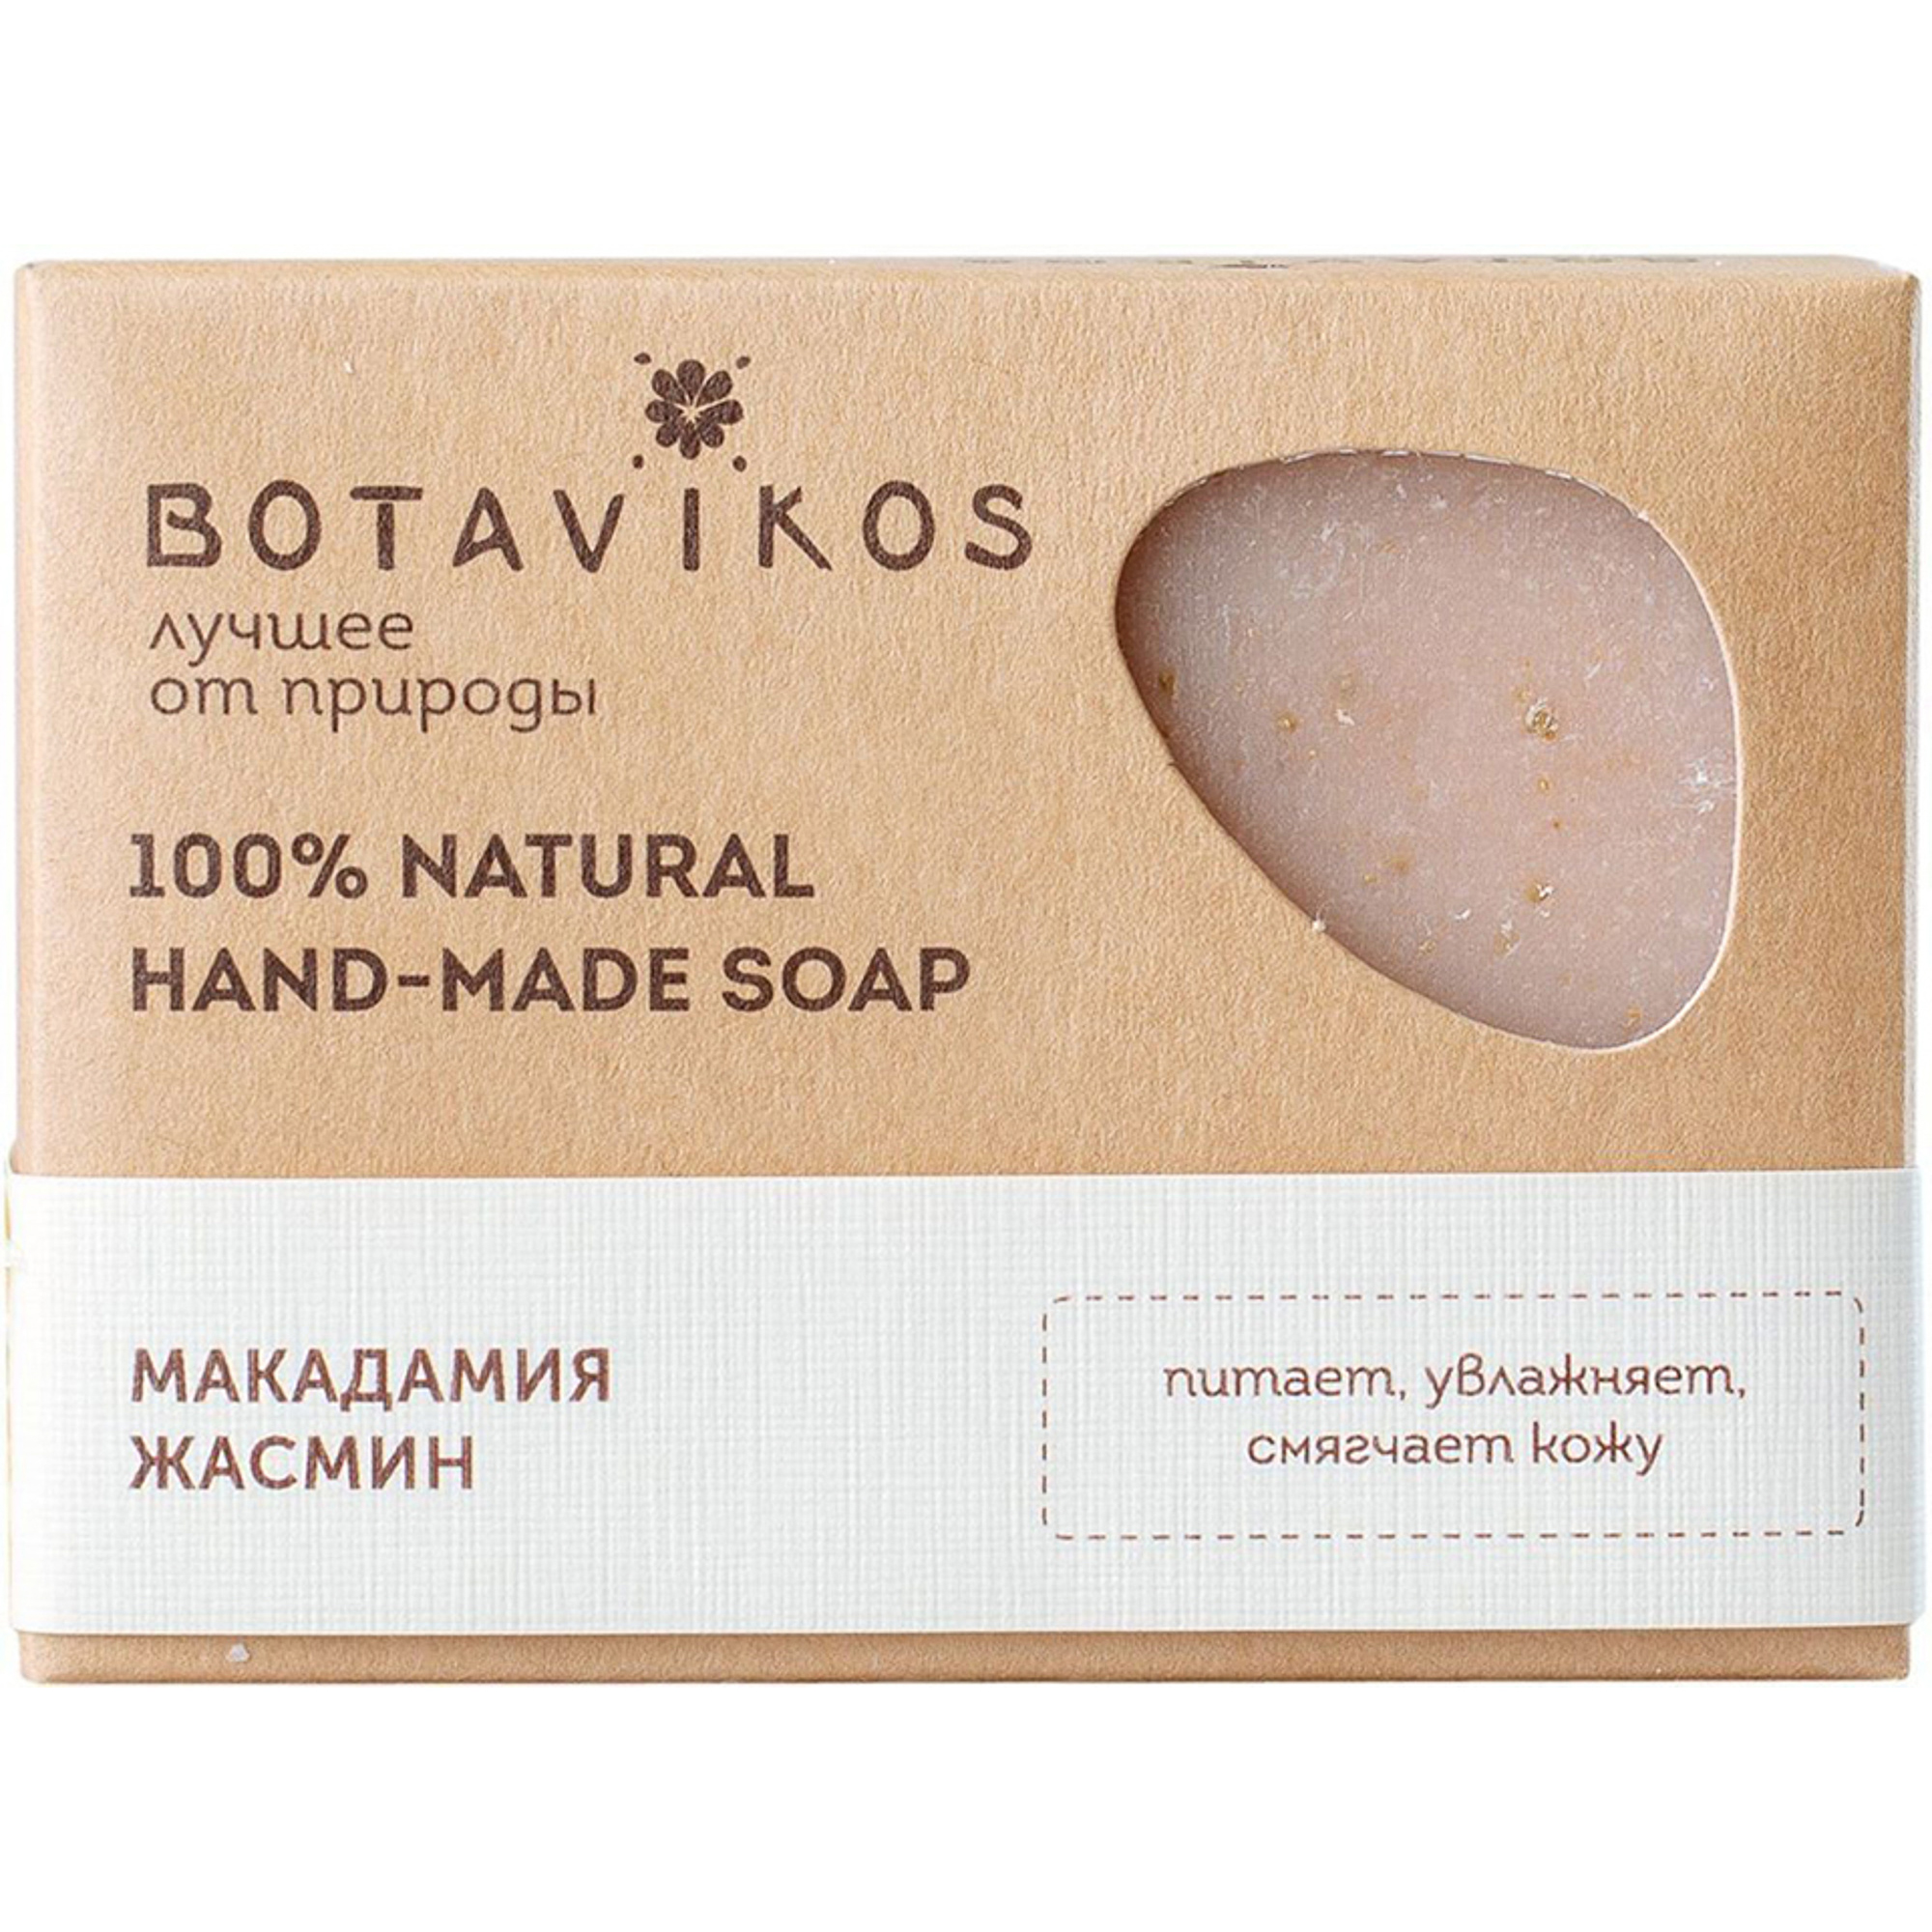 Натуральное мыло ручной работы Botavikos Макадамия Жасмин 100 г grower cosmetics мыло твердое blue clay 150